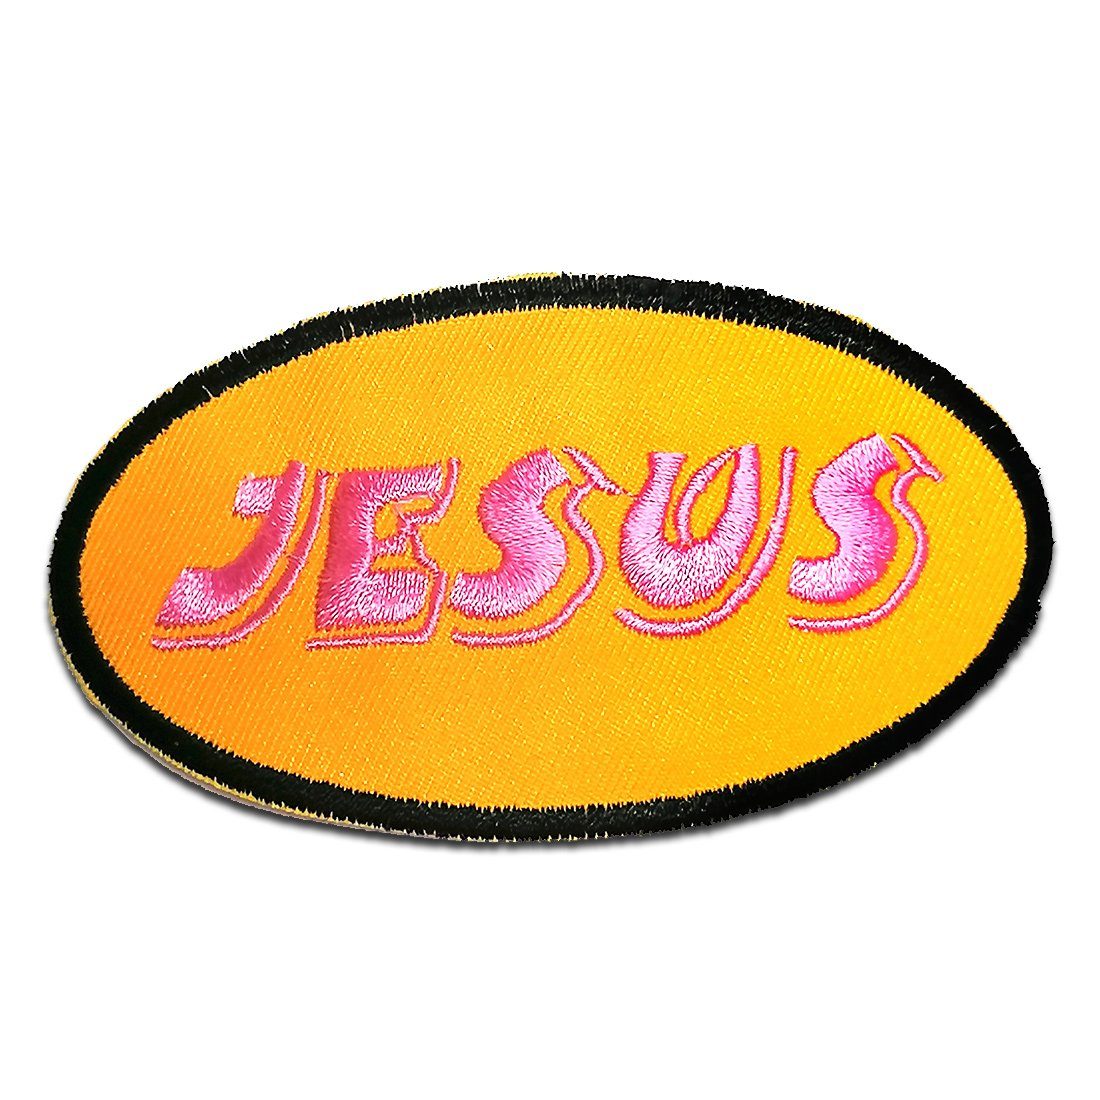 Jesus gelb 9,4x5cm Aufnäher Patches Aufbügeln Bügelbild 